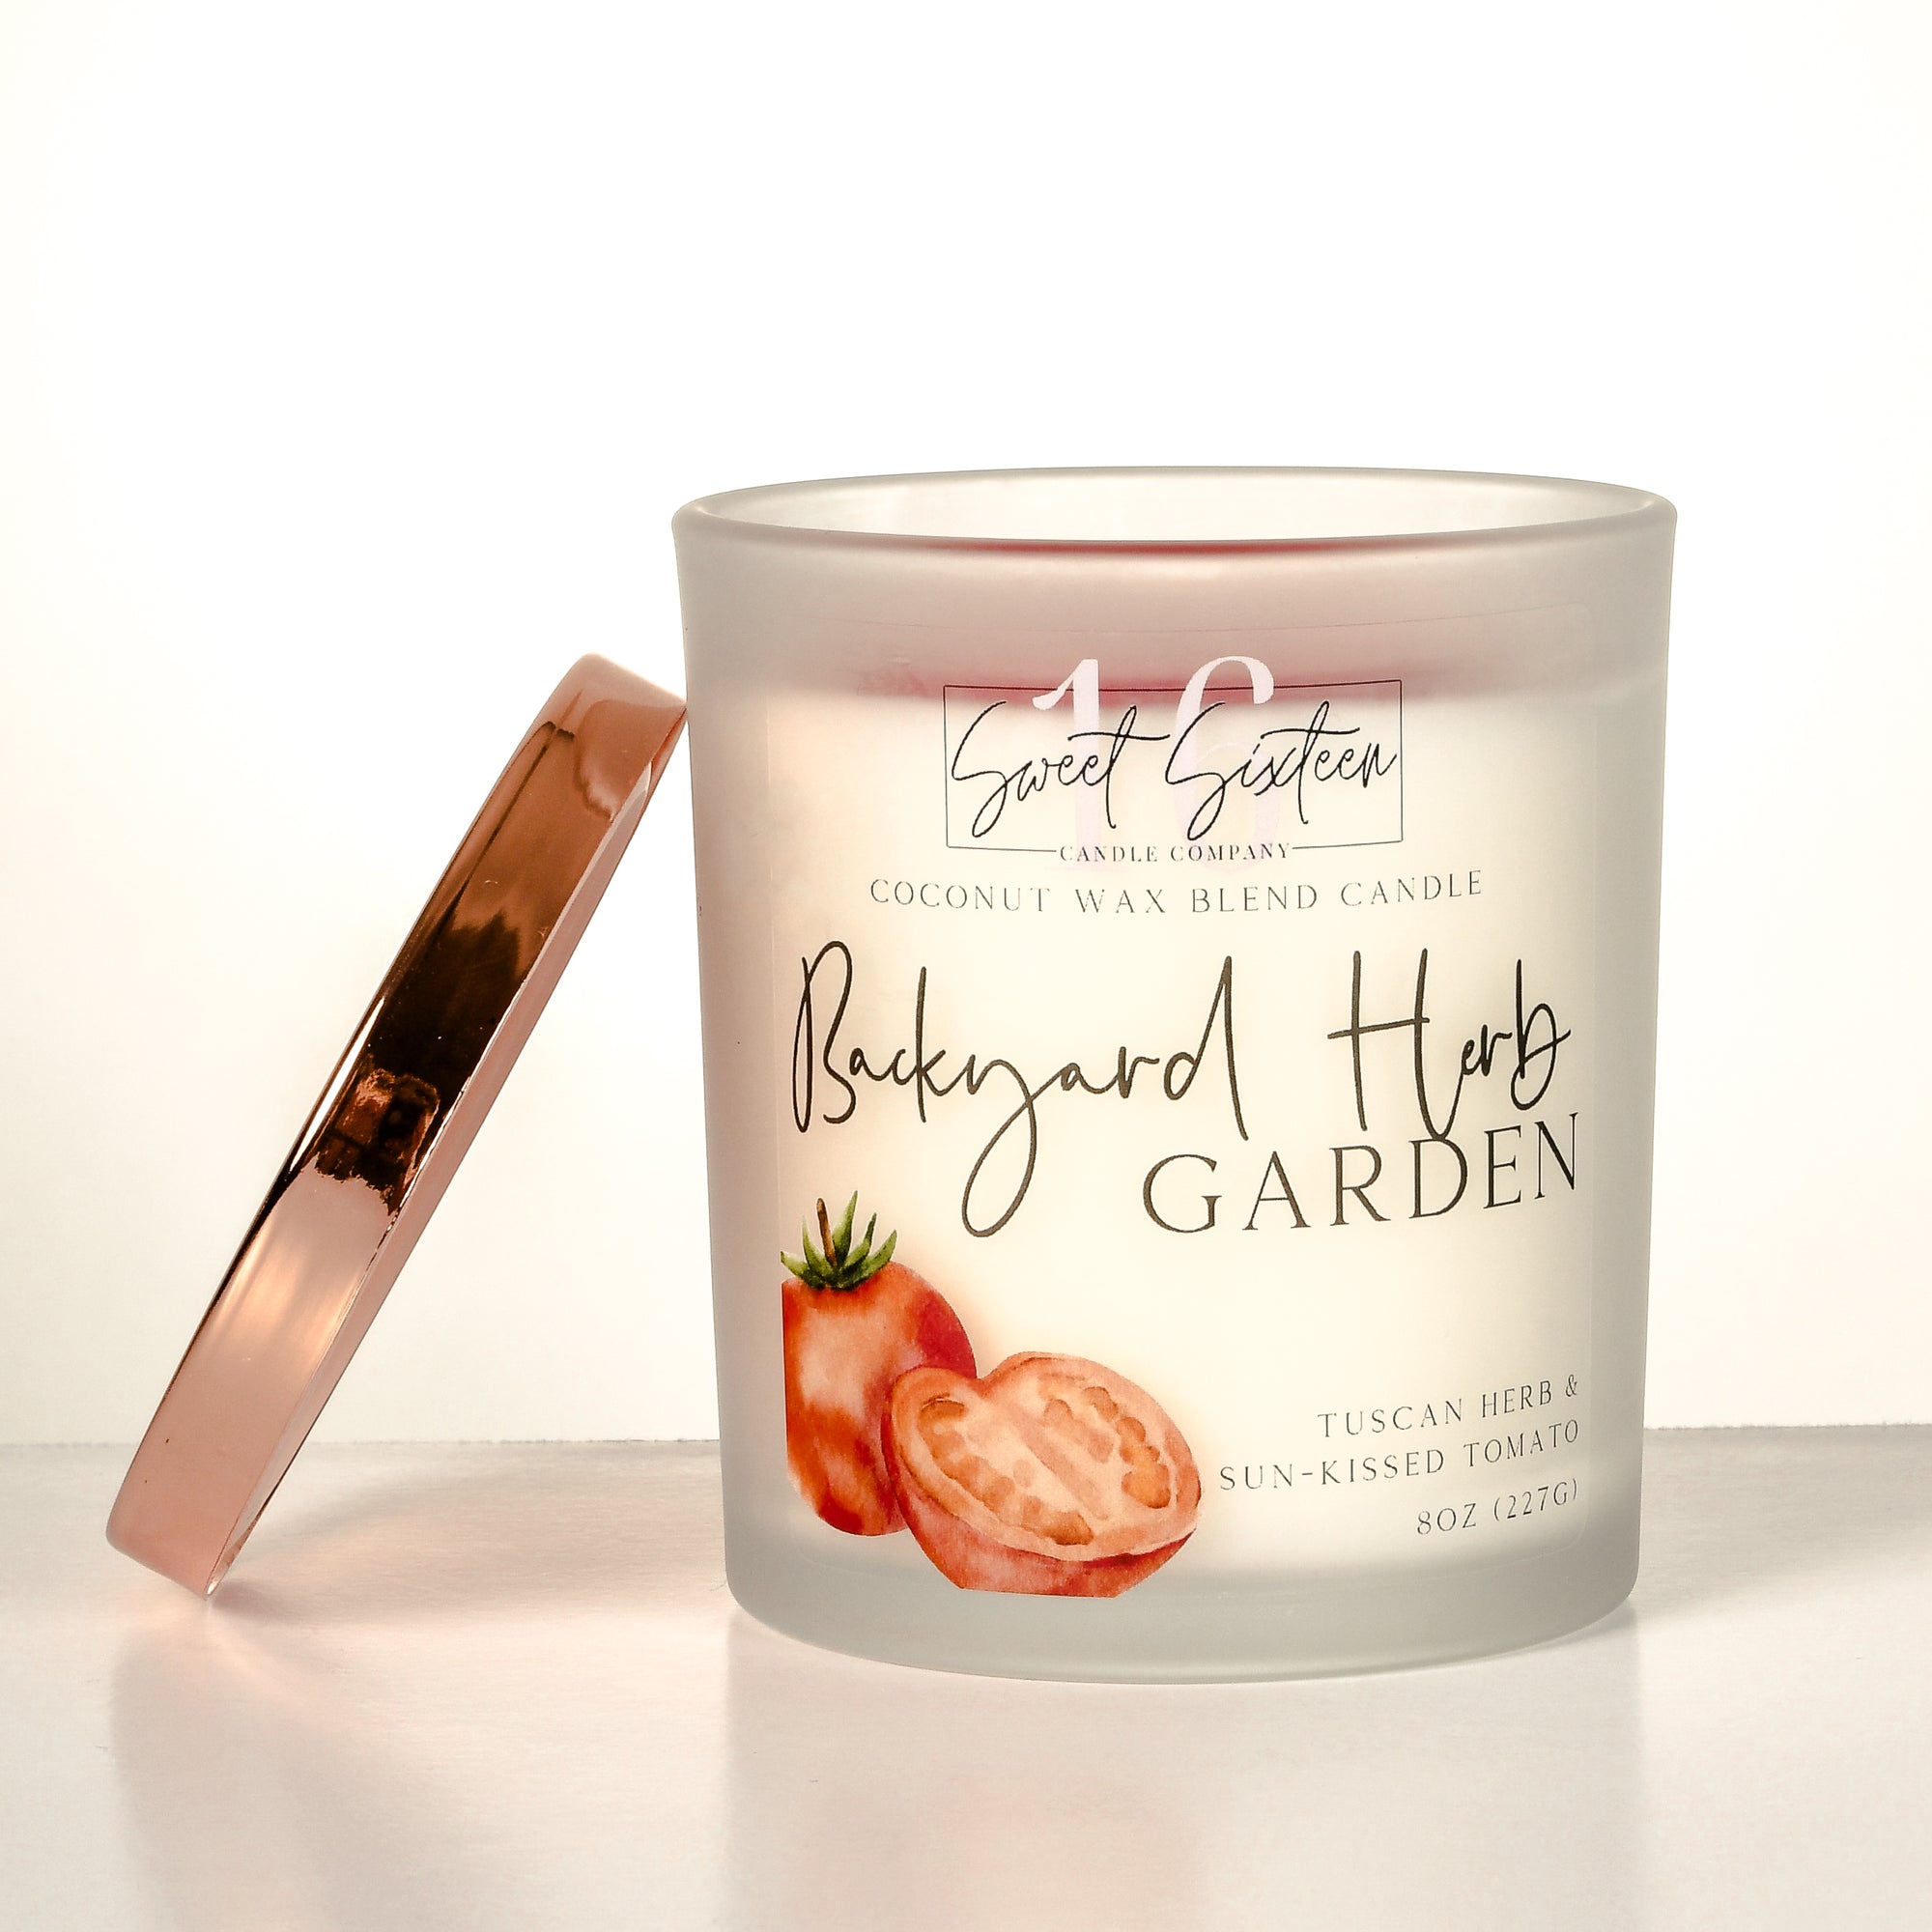 Backyard Herb Garden | 8oz Tumbler Candle | Signature Collection